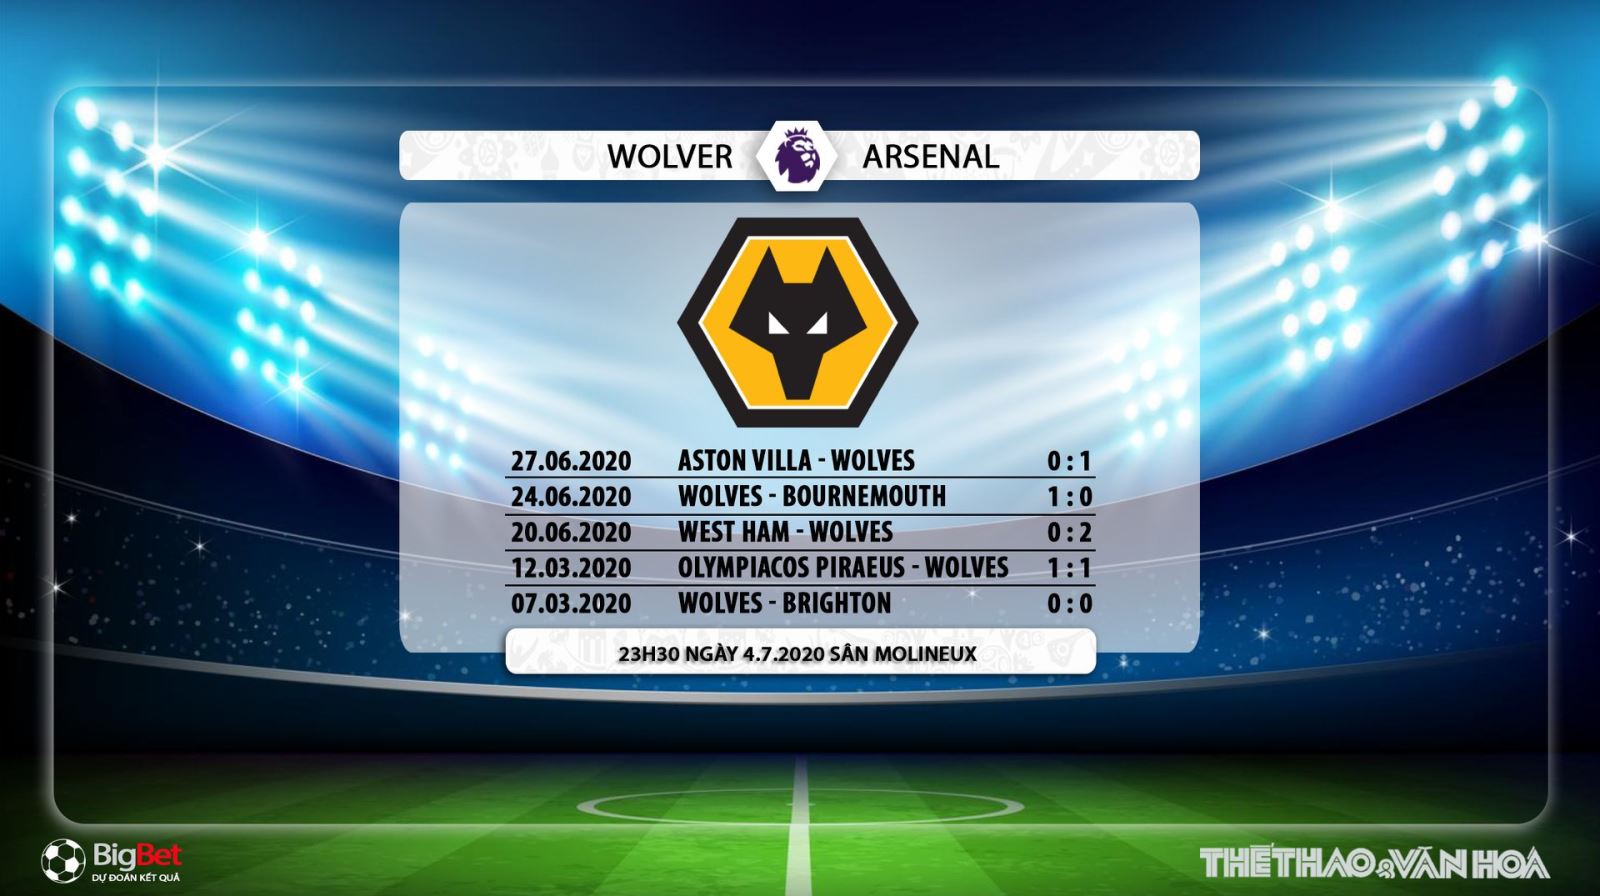 Wolves vs Arsenal, trực tiếp bóng đá, trực tiếp Wolves vs Arsenal, Arsenal, Wolves, lịch thi đấu bóng đá, bóng đá, nhận định bóng đá, kèo bóng đá